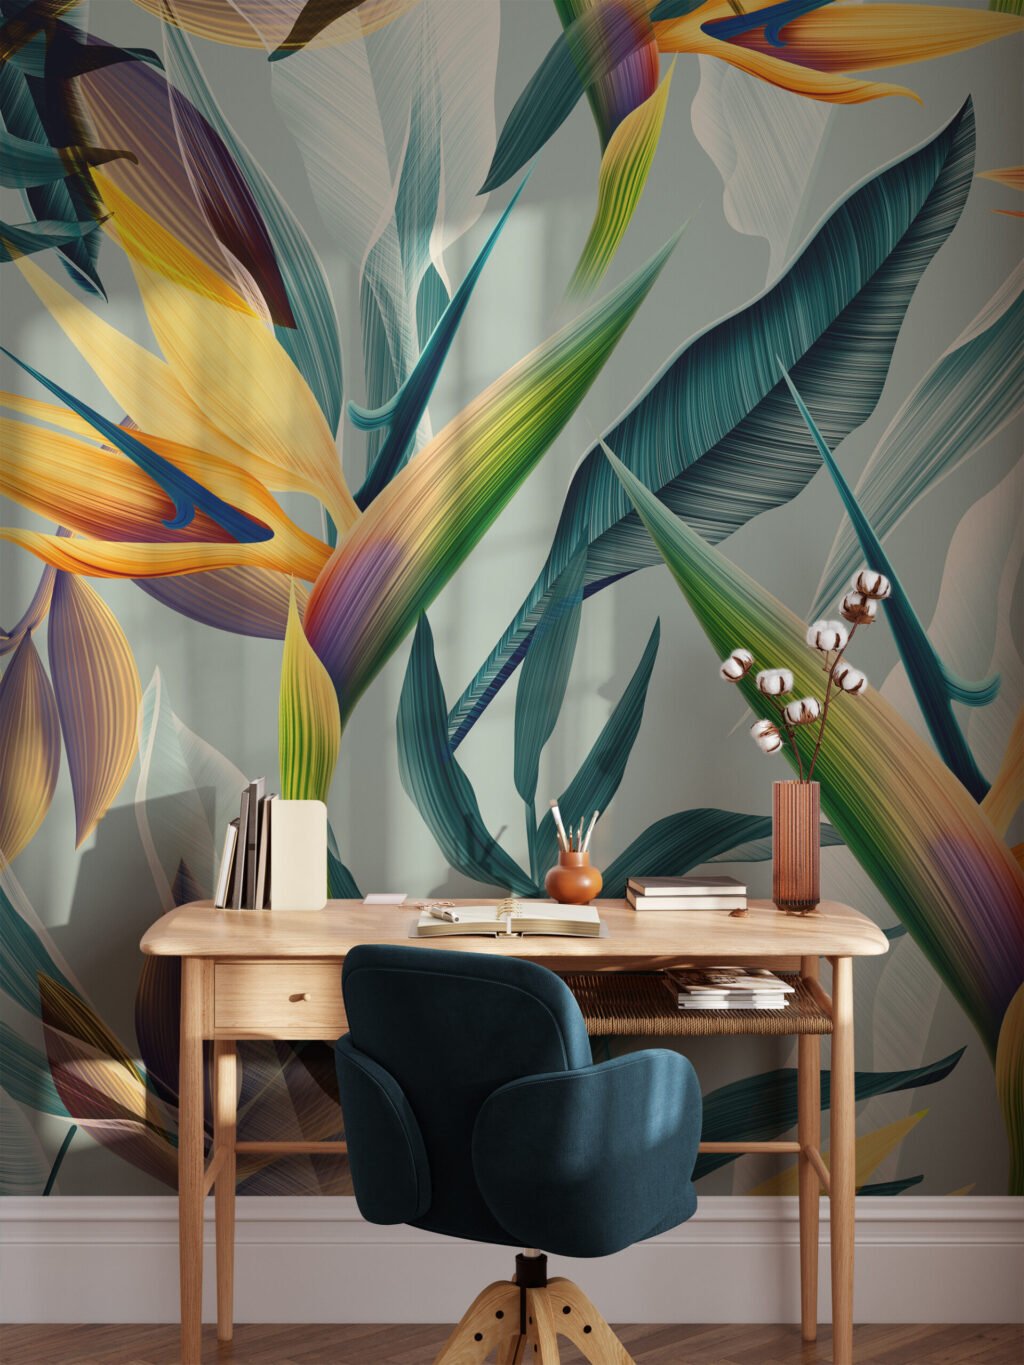 Tropik Nane Renkli Cennet Kuşları Çiçekleri Duvar Kağıdı, Abstract Tropik Yaprak Desenli Duvar Posteri Çiçekli Duvar Kağıtları 5